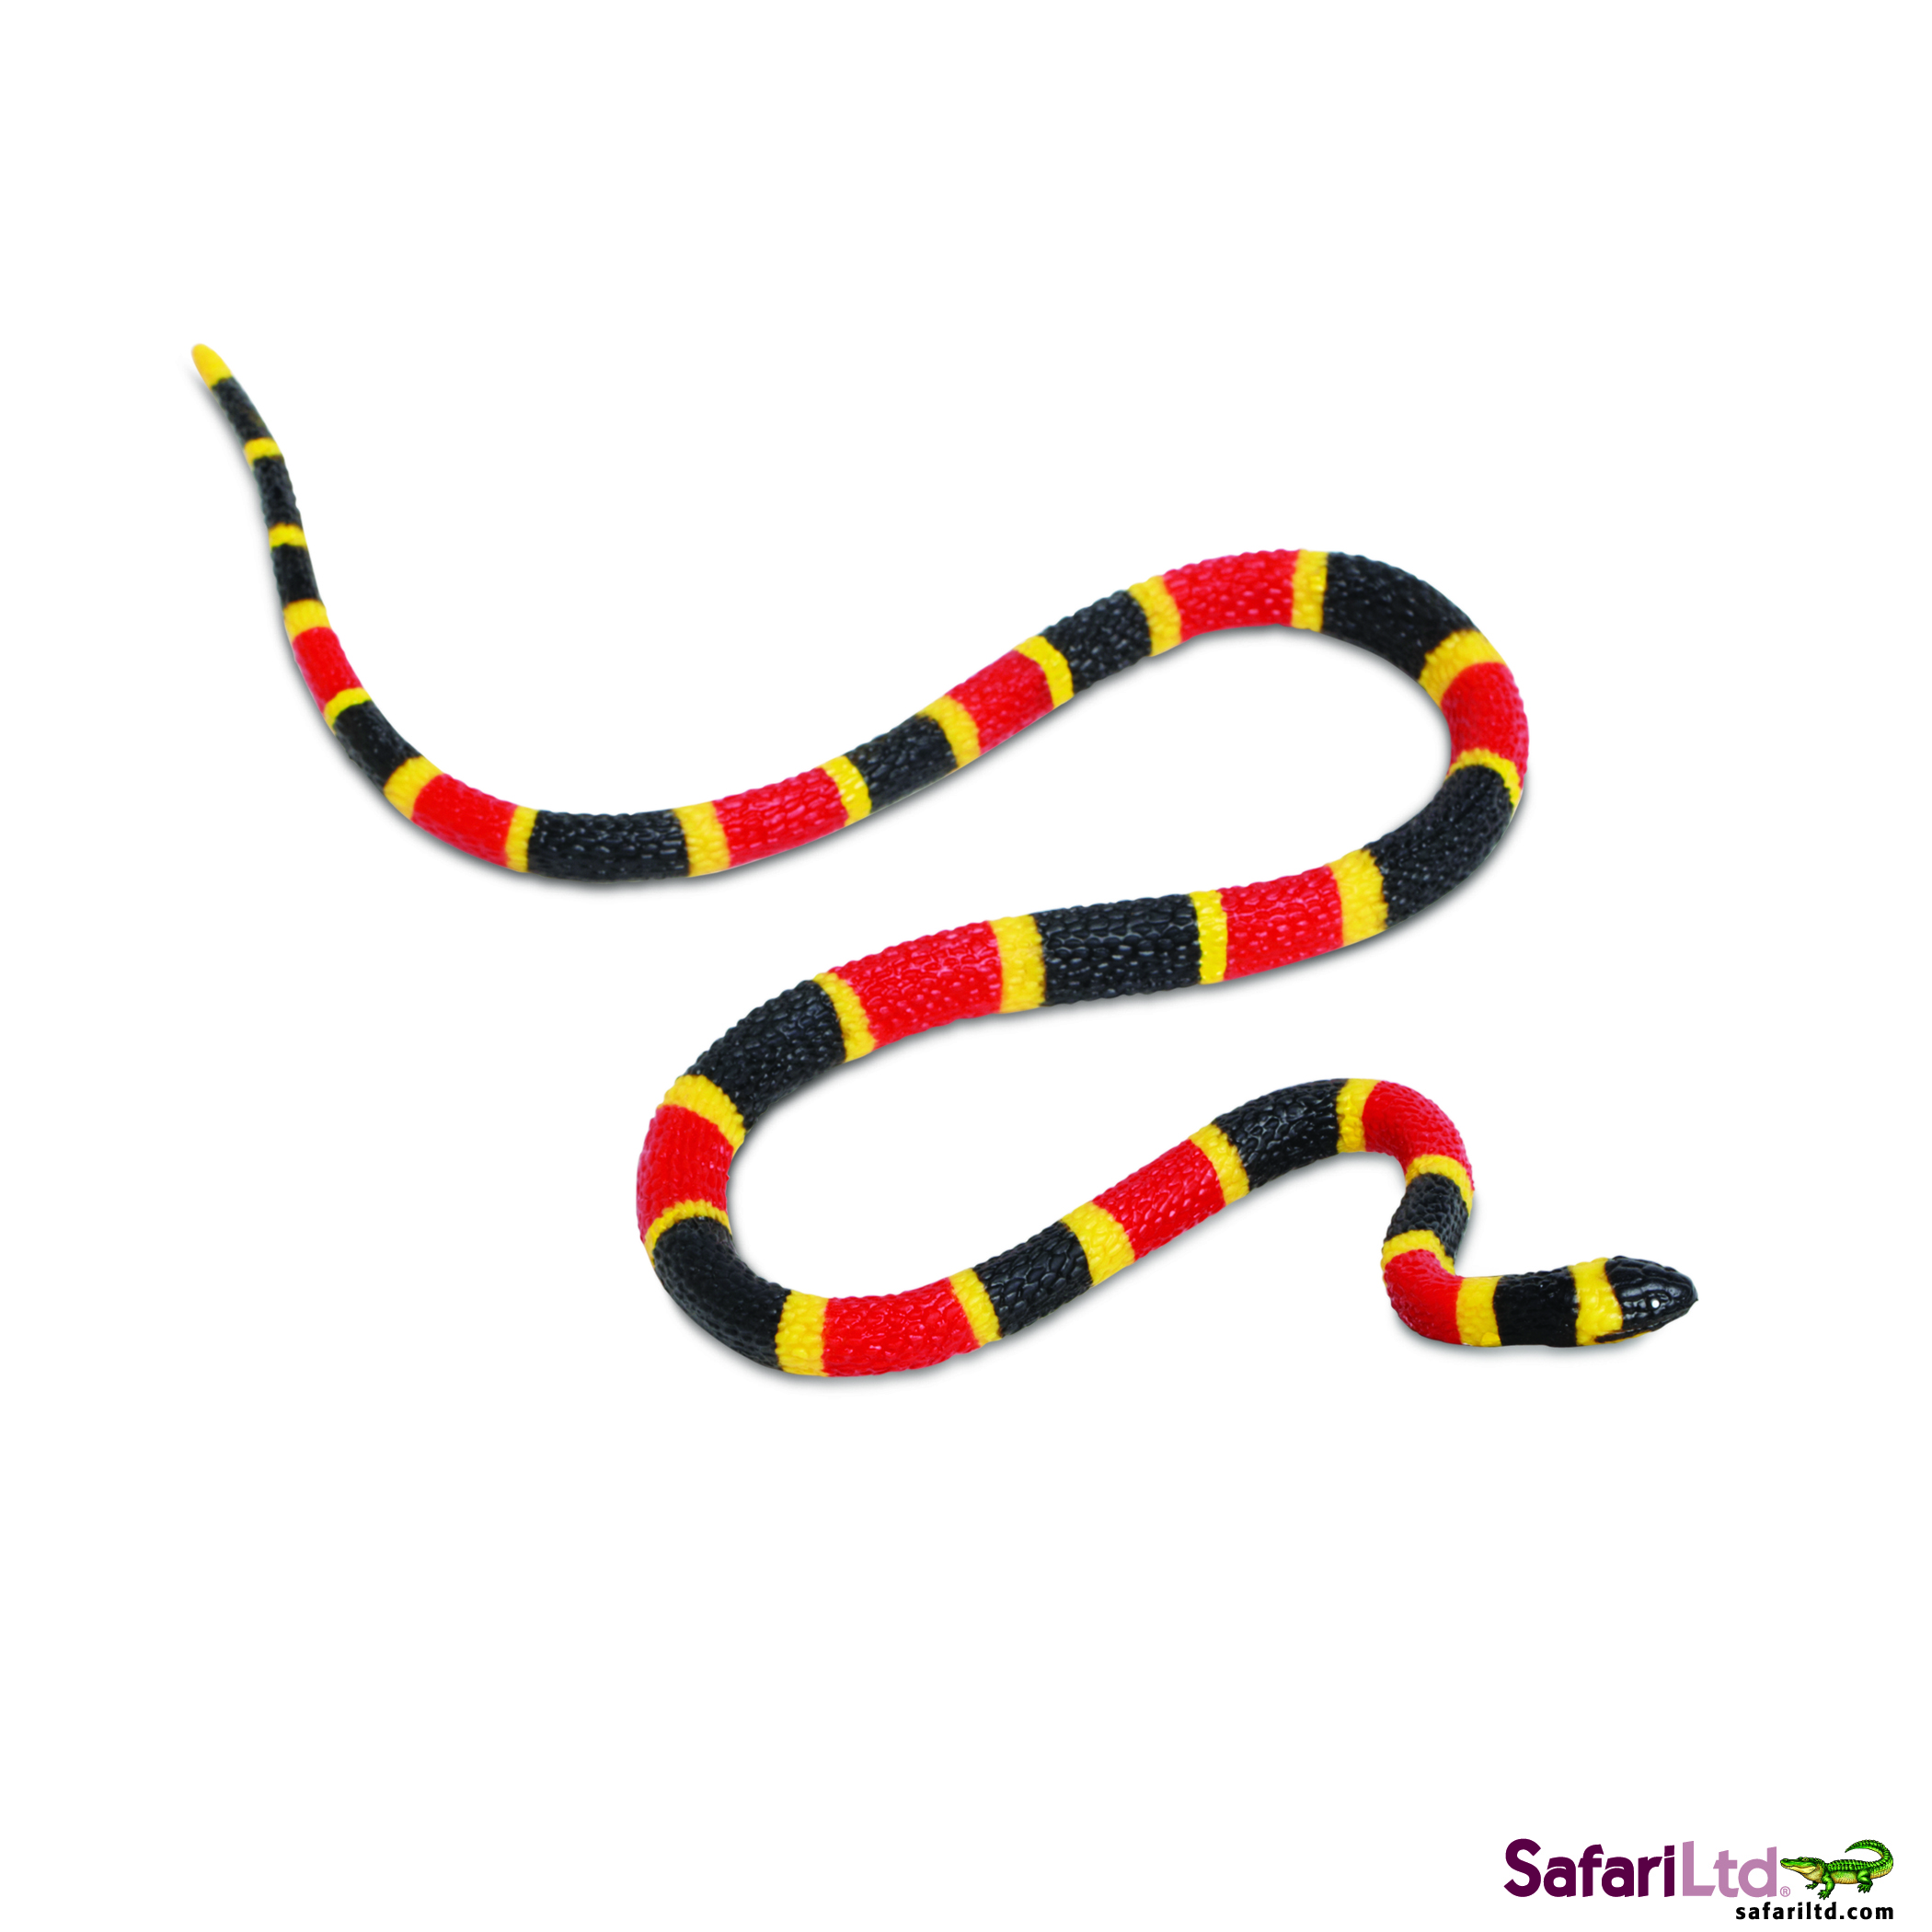 Snake clipart king snake. Clip art for kids